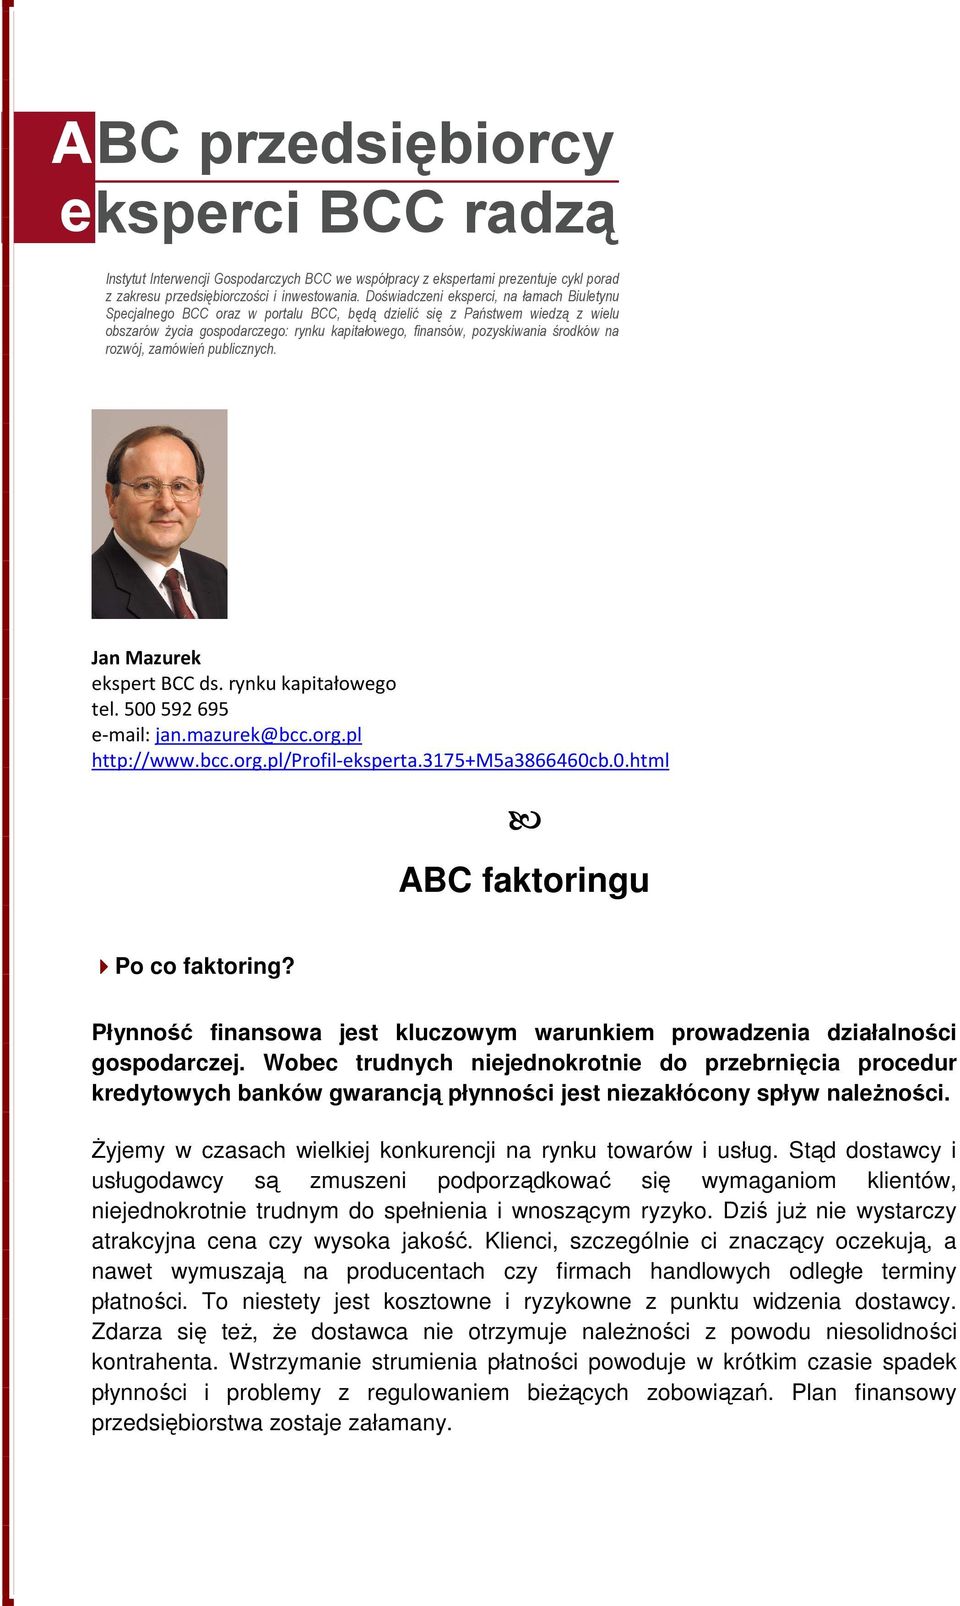 środków na rozwój, zamówień publicznych. Jan Mazurek ekspert BCC ds. rynku kapitałowego tel. 500 592 695 e-mail: jan.mazurek@bcc.org.pl http://www.bcc.org.pl/profil-eksperta.3175+m5a3866460cb.0.html ABC faktoringu Po co faktoring?